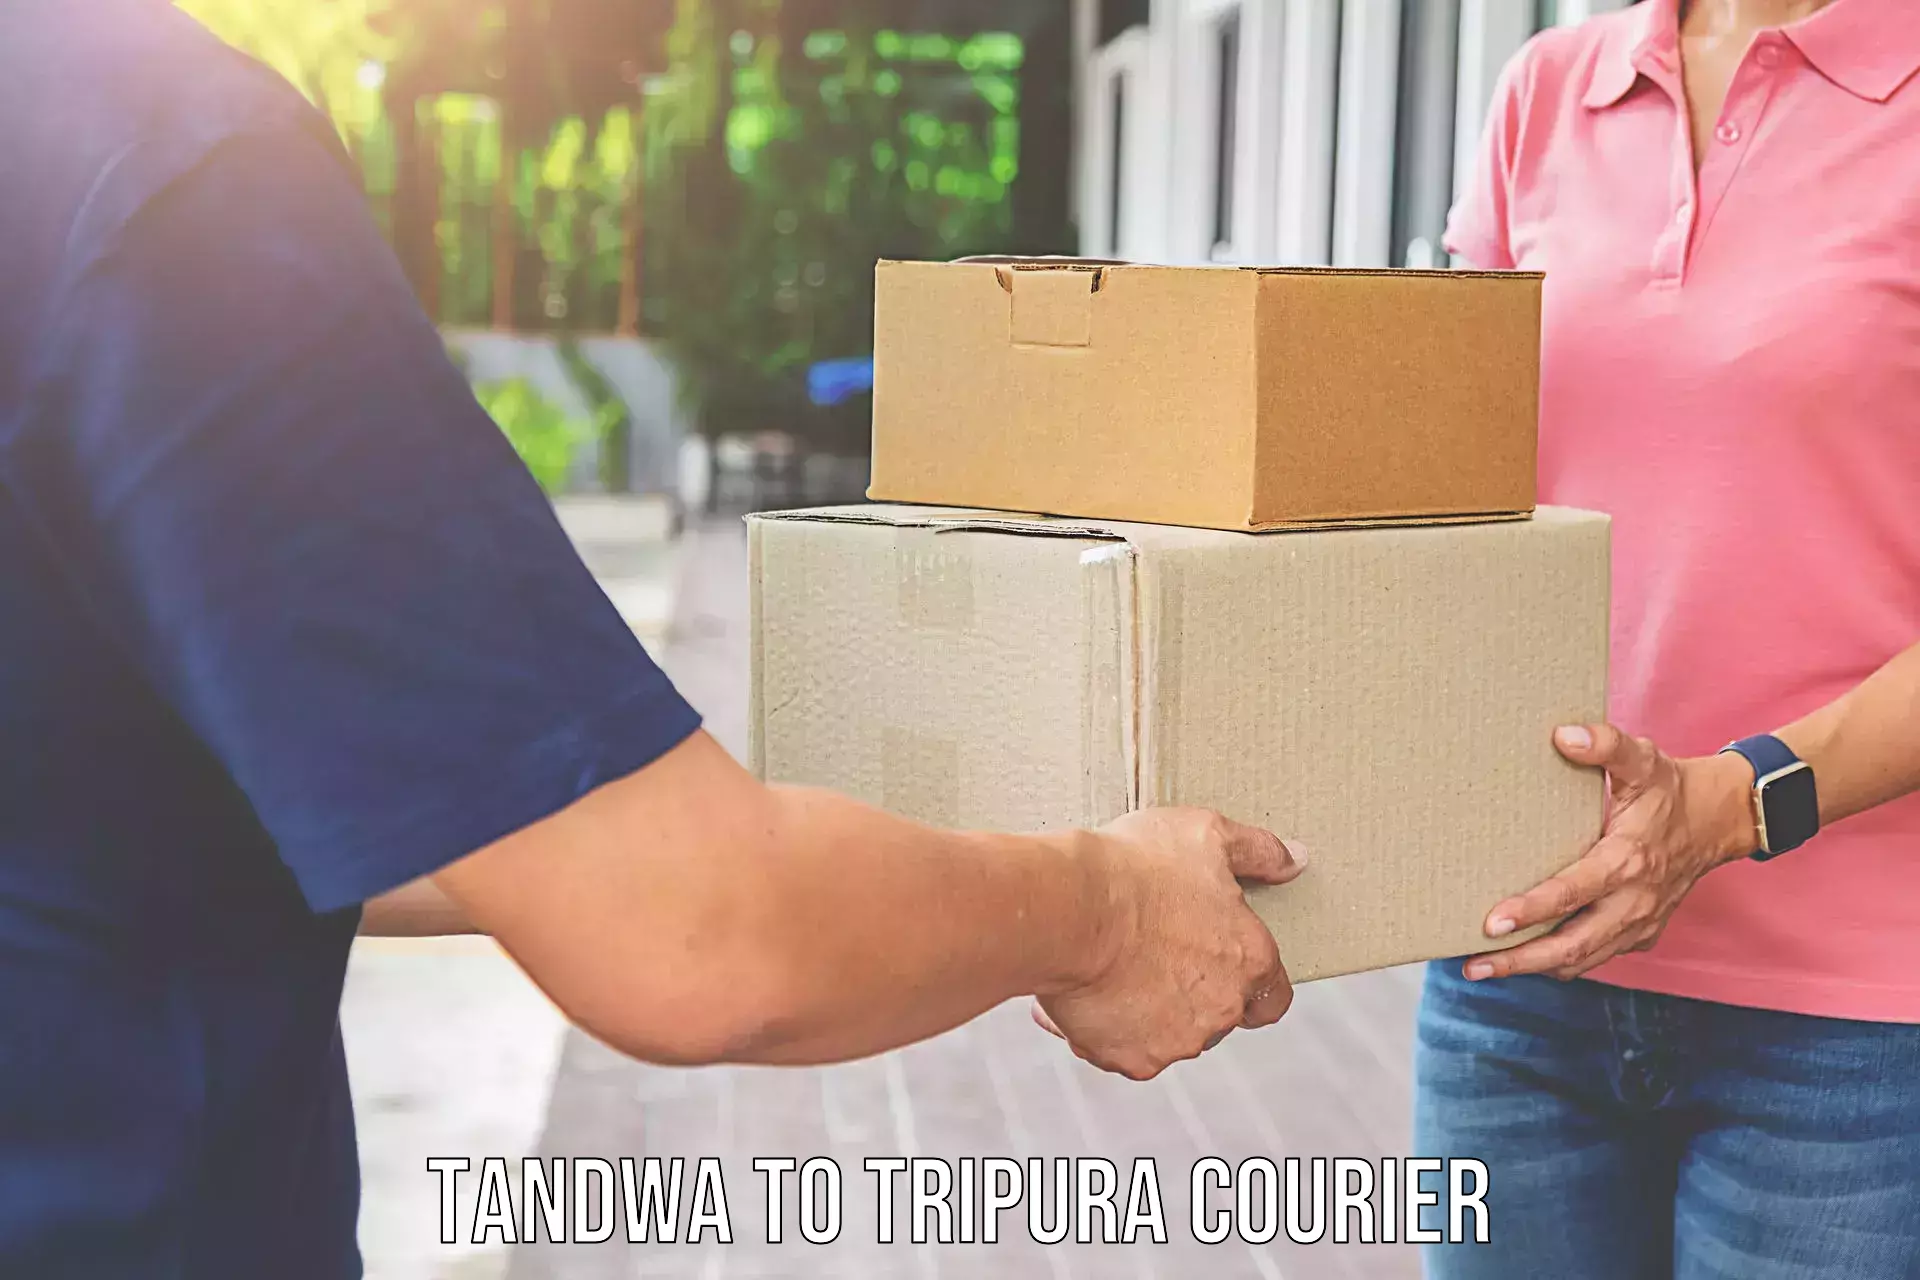 Furniture transport specialists Tandwa to Tripura